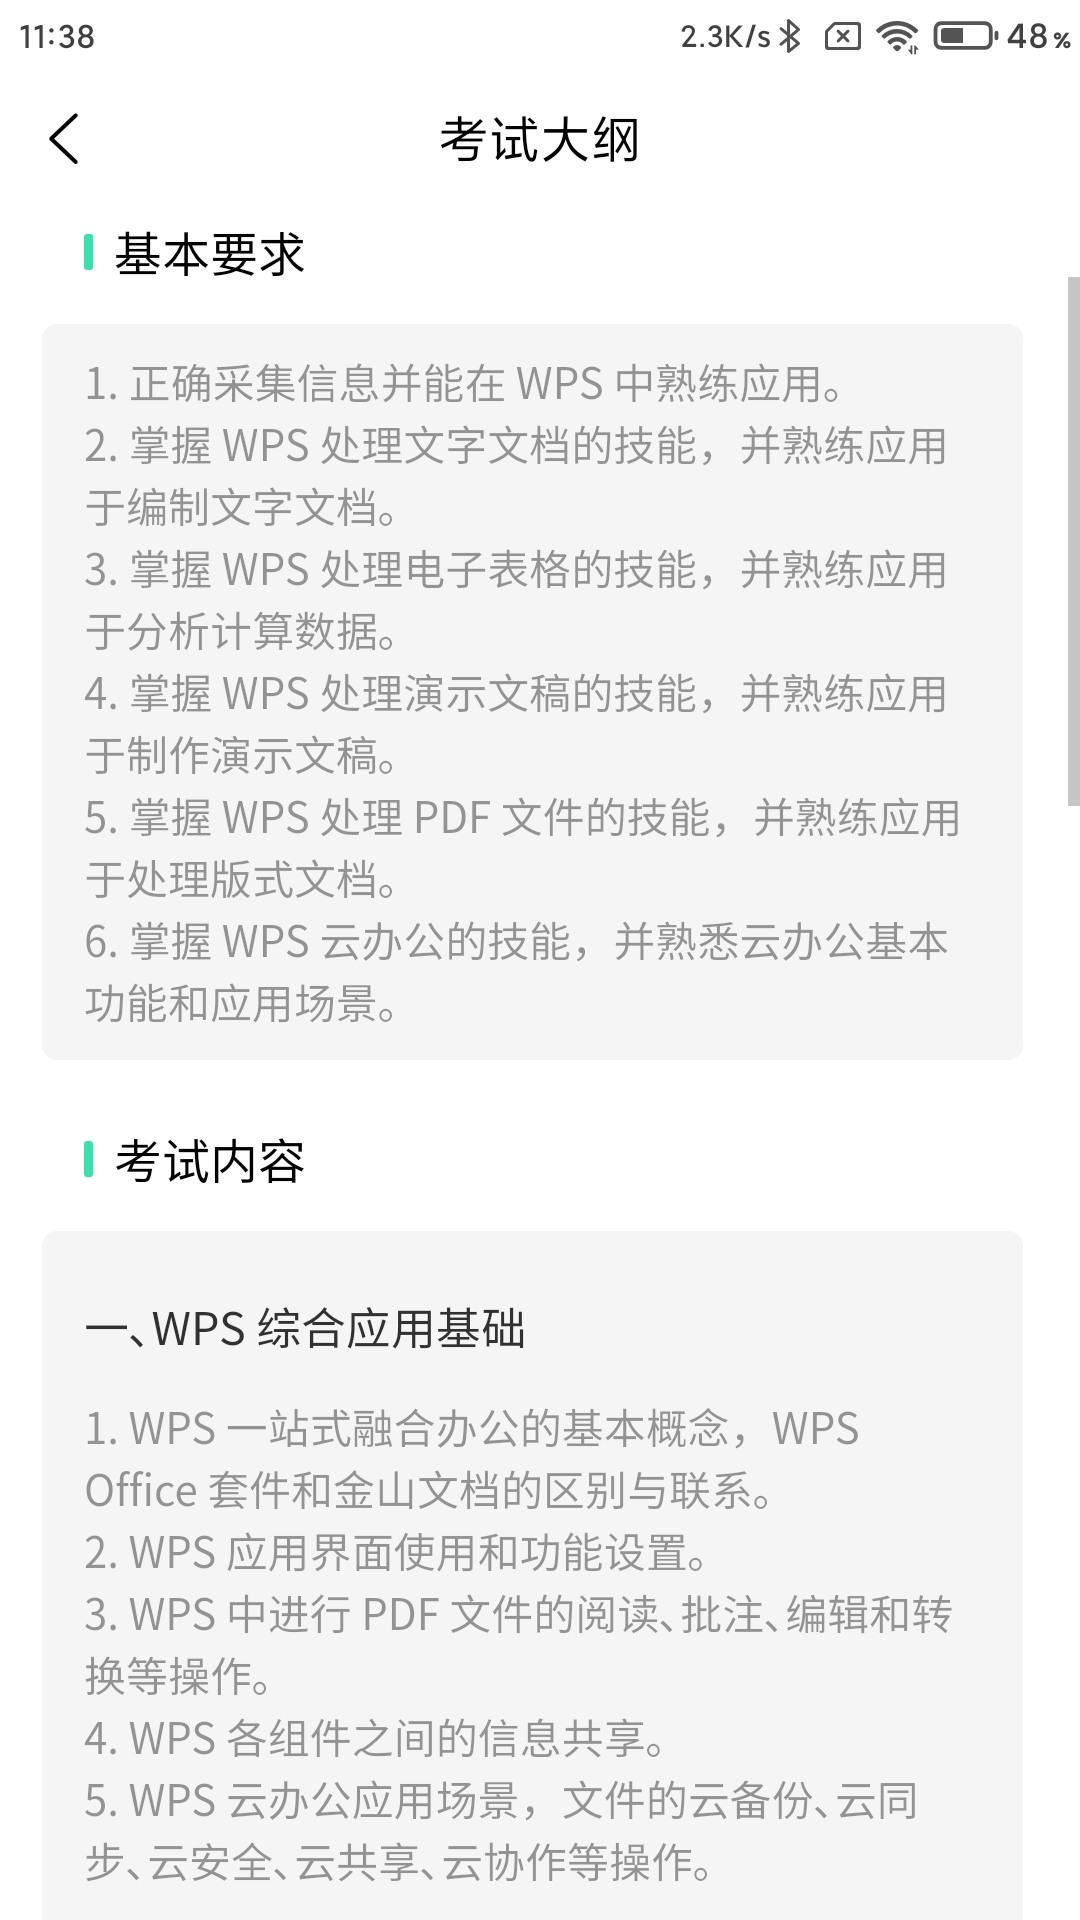 计算机二级WPS Office